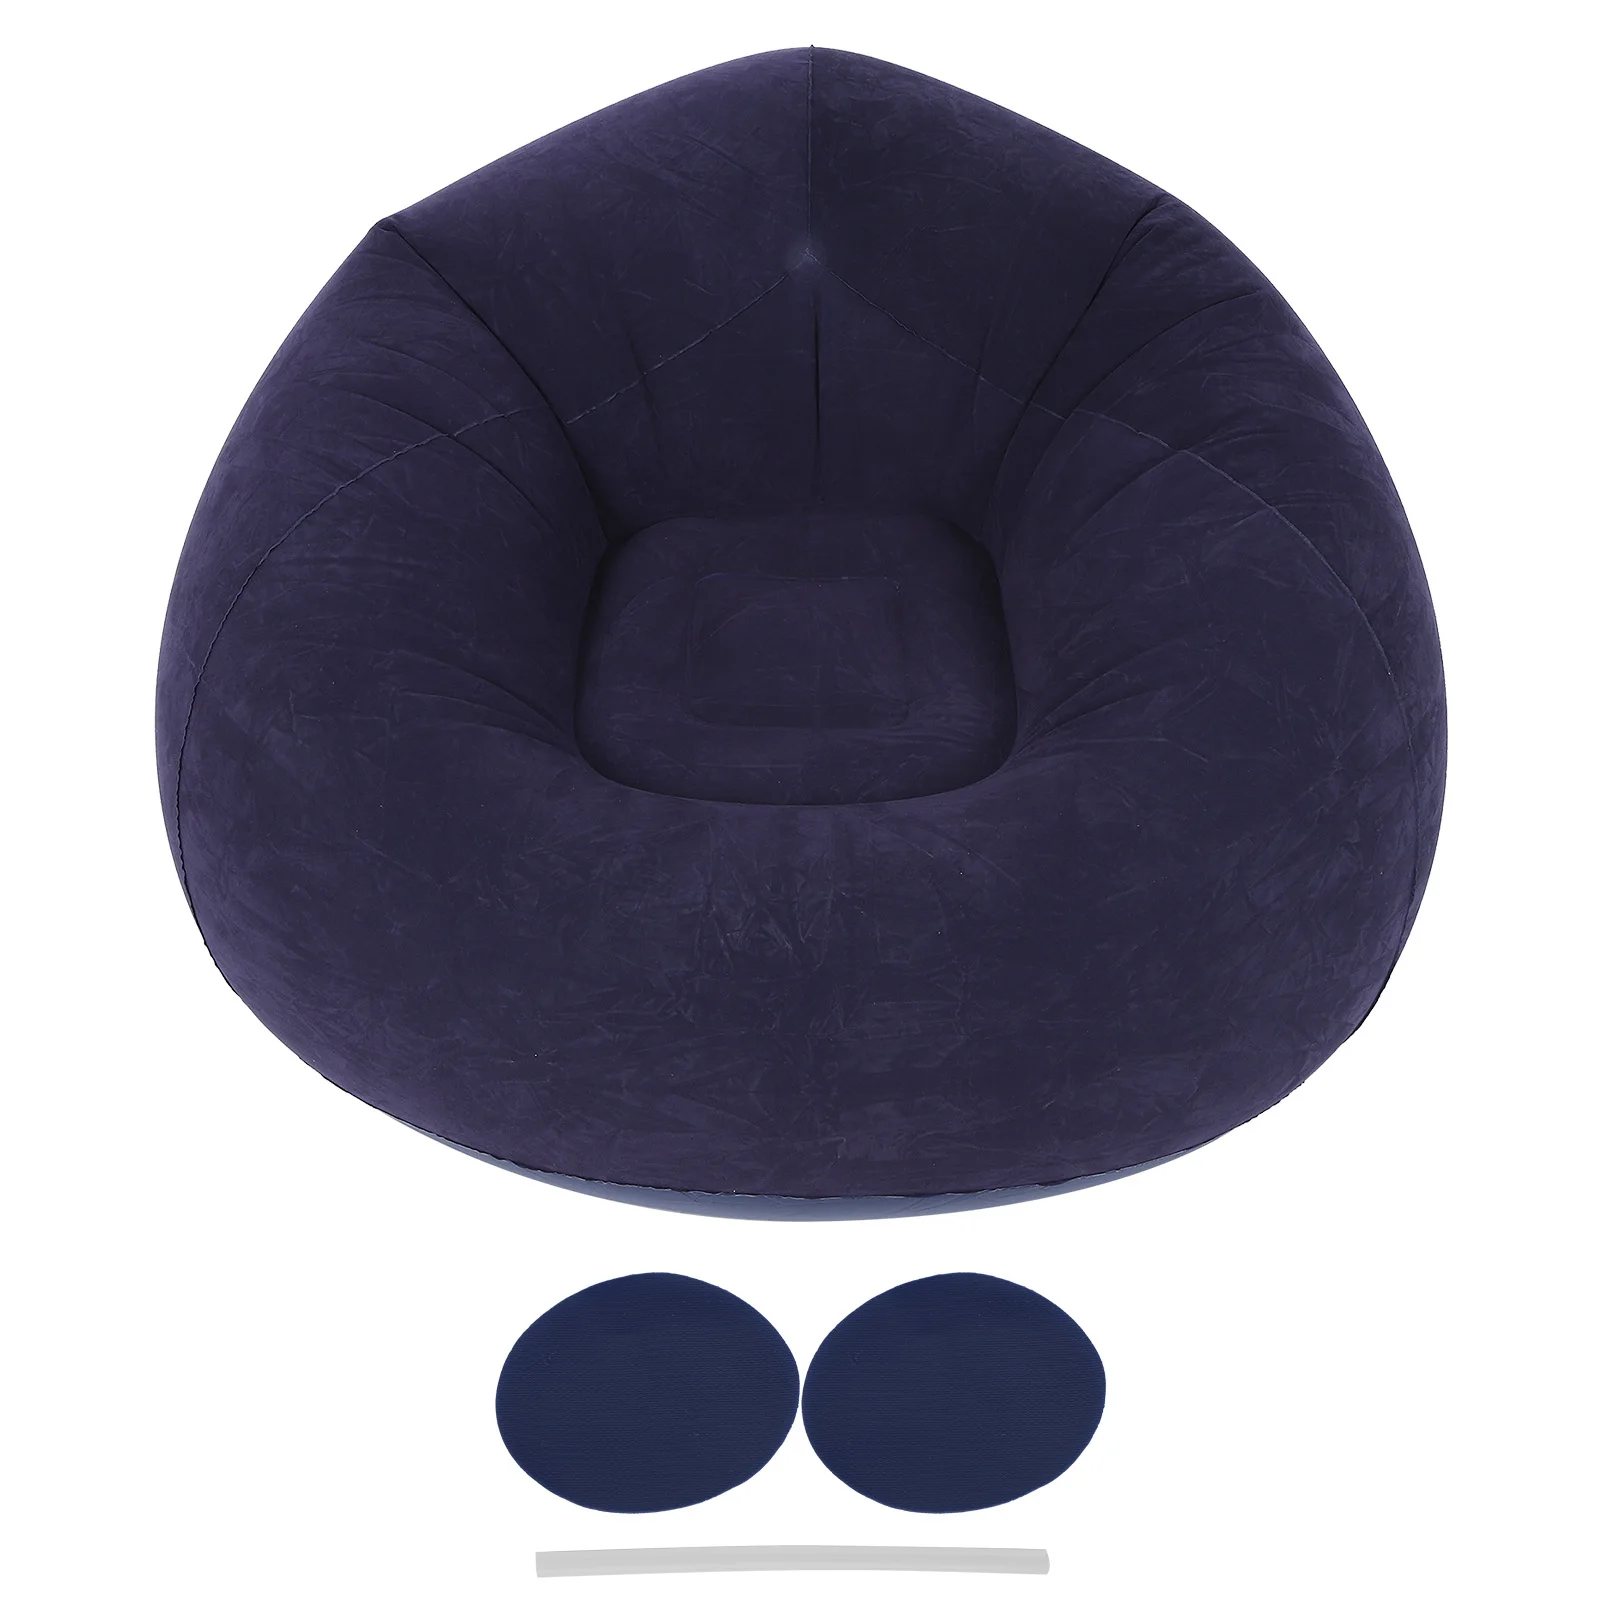 

Ультраленивый мягкий надувной Одноместный Сферический диван-стул для спальни, гостиной, улицы, путешествия, складной, кемпинг, пикник